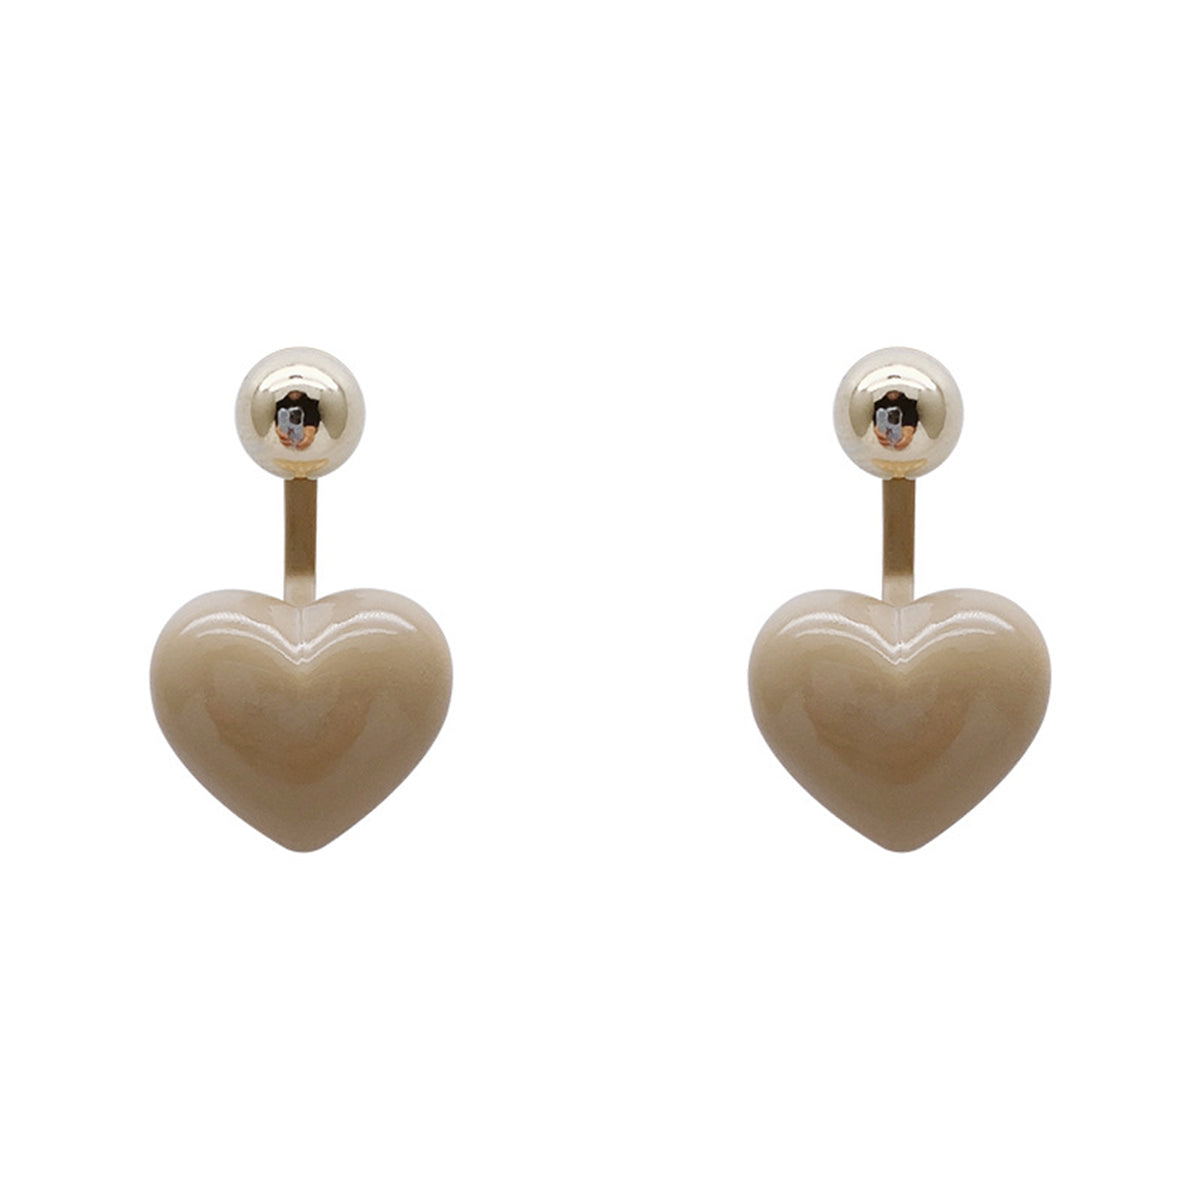 Gray Enamel & 18K Gold-Plated Heart Ear Jackets